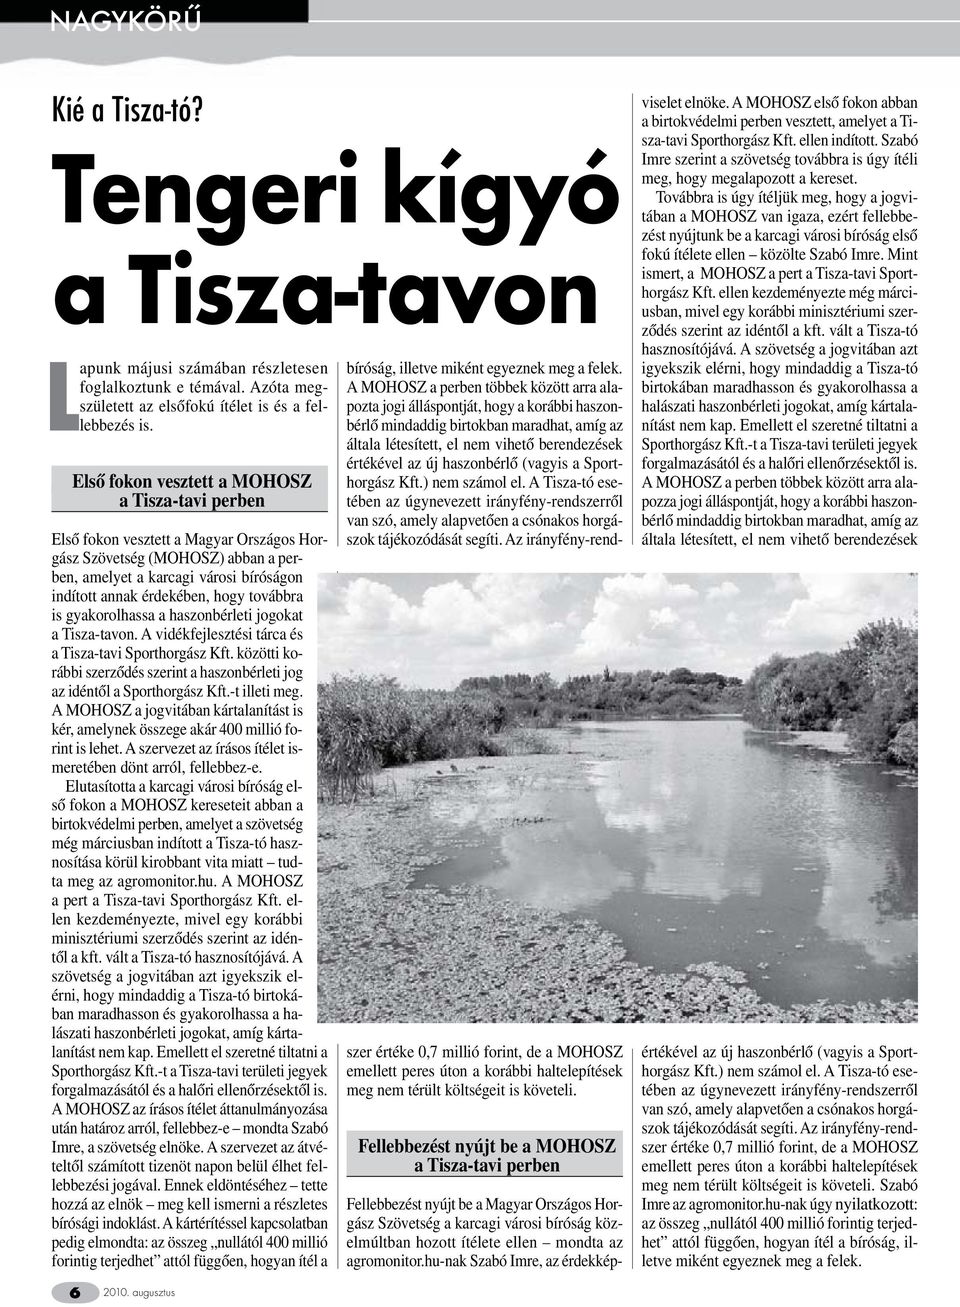 továbbra is gyakorolhassa a haszonbérleti jogokat a Tisza-tavon. A vidékfejlesztési tárca és a Tisza-tavi Sporthorgász Kft.